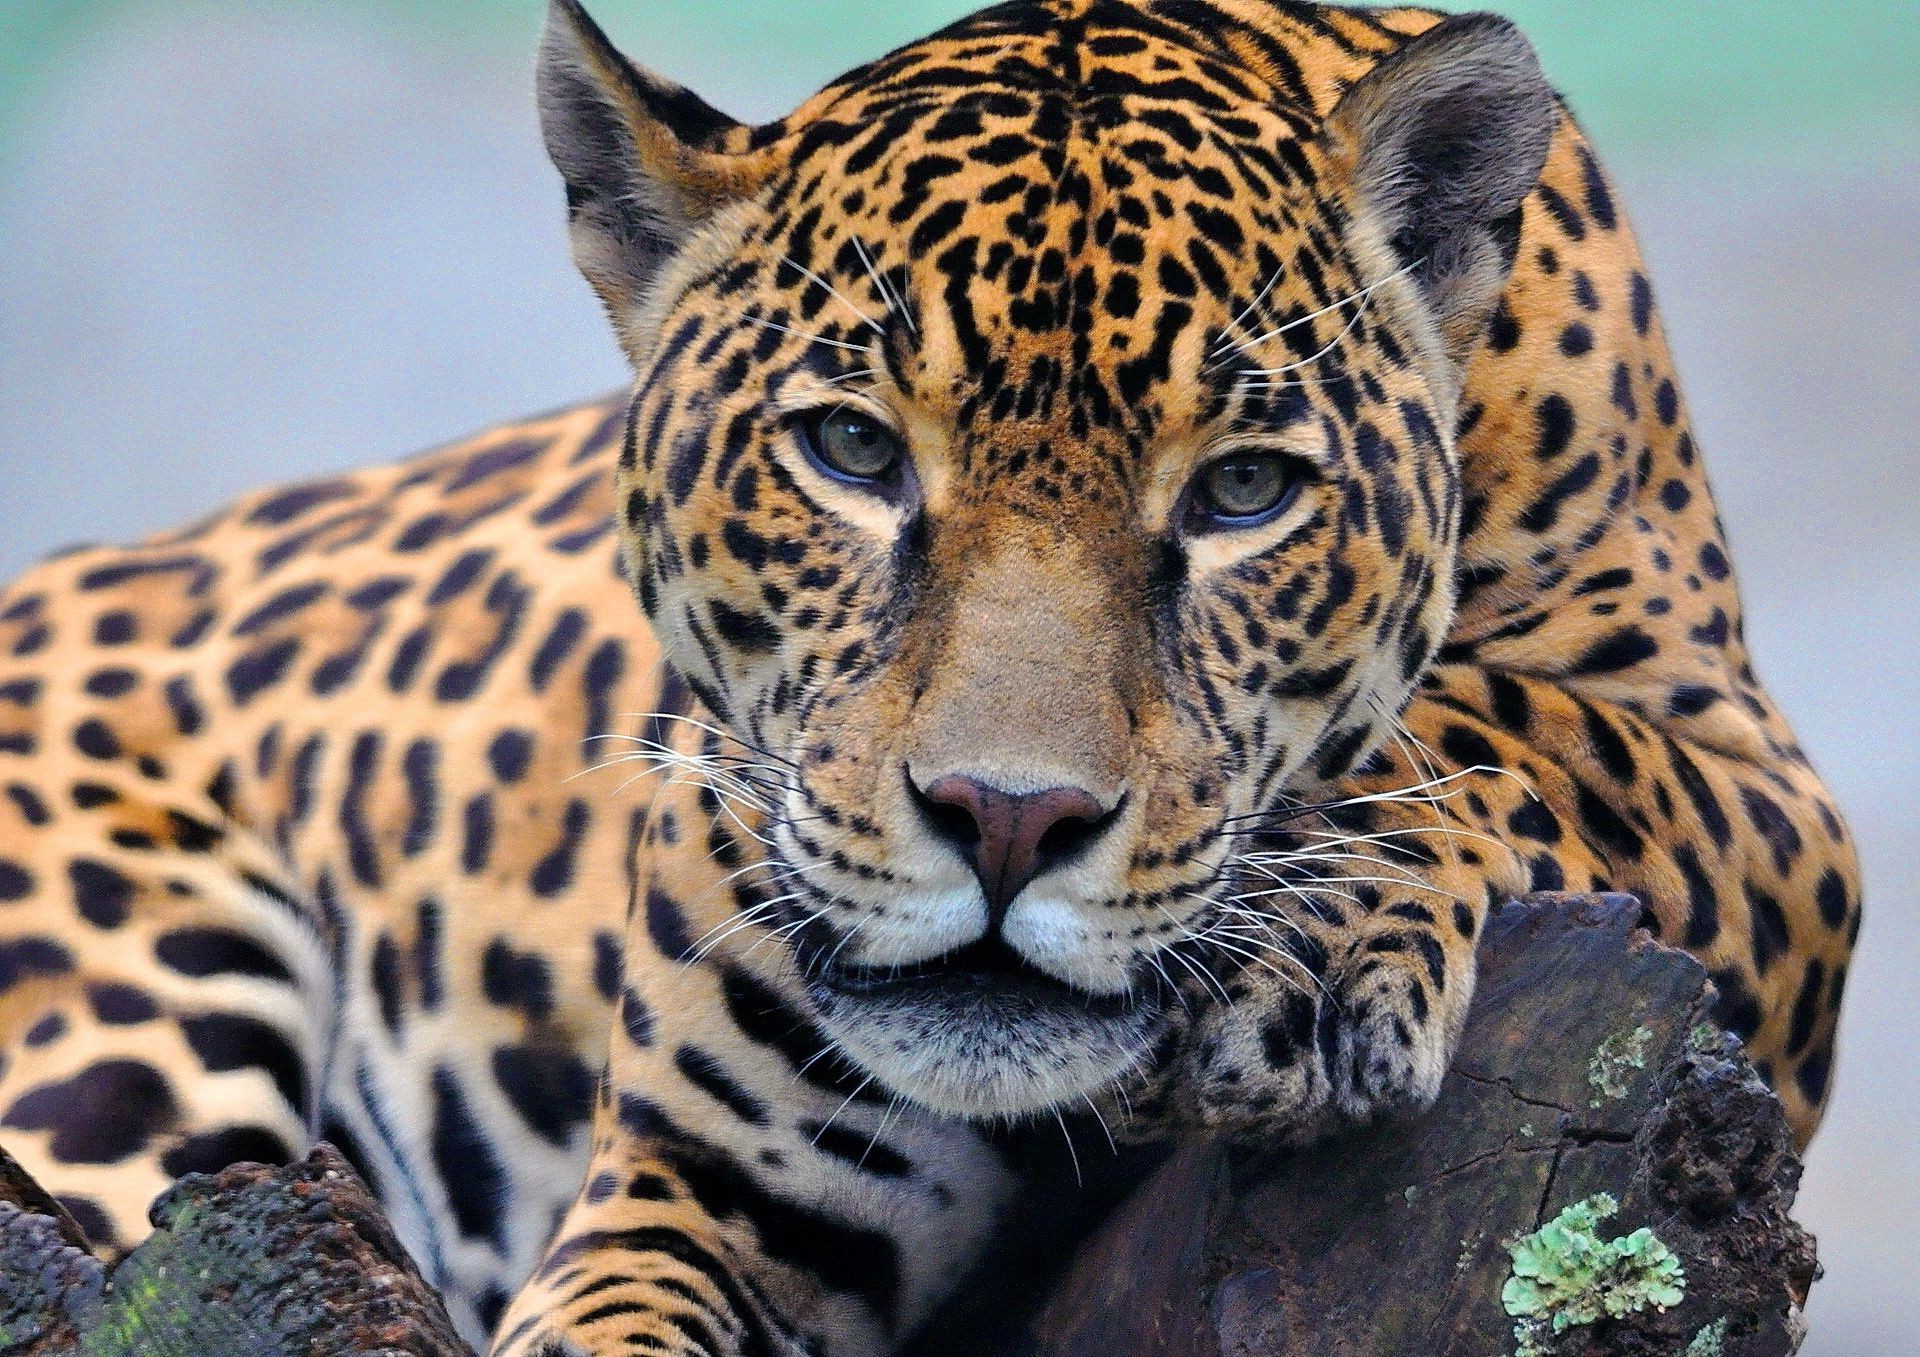 животные кошка дикой природы леопард млекопитающее зоопарк хищник животное сафари джунгли тигр мясоед охотник мех дикий большой охота